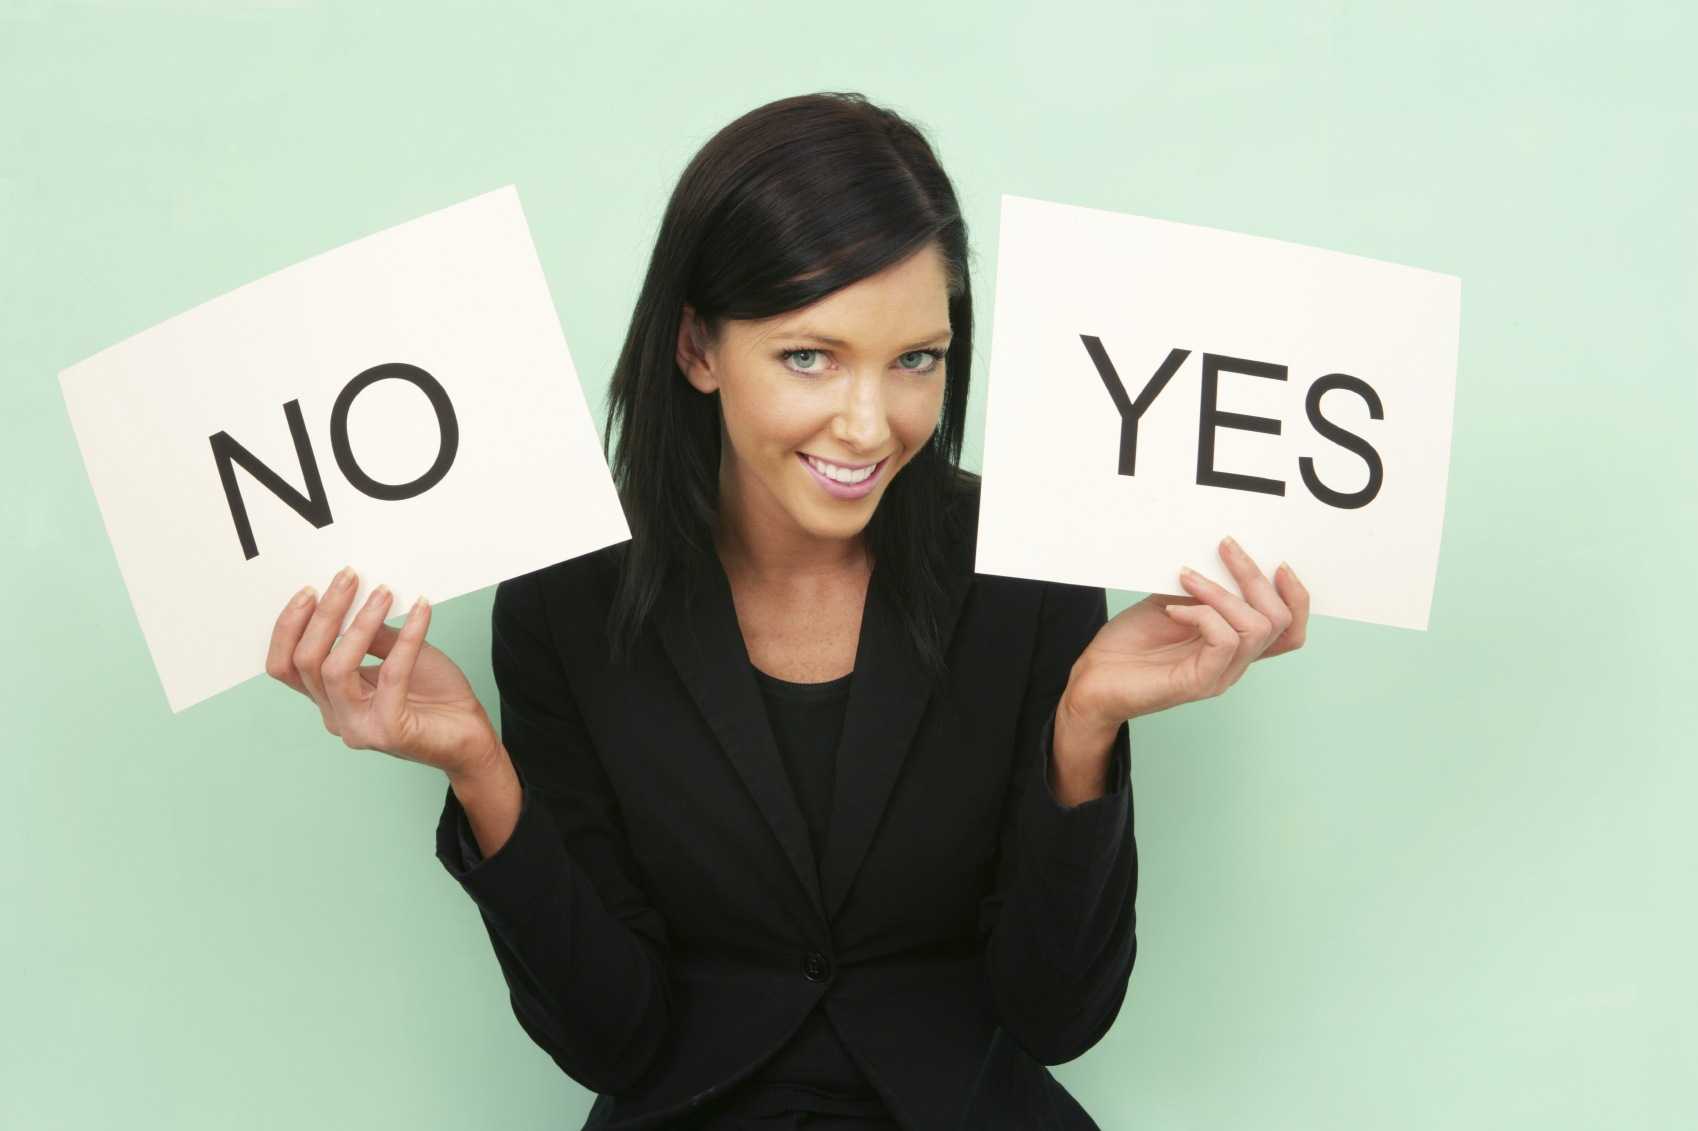 Как научиться говорить "нет" и отказывать людям уверенно